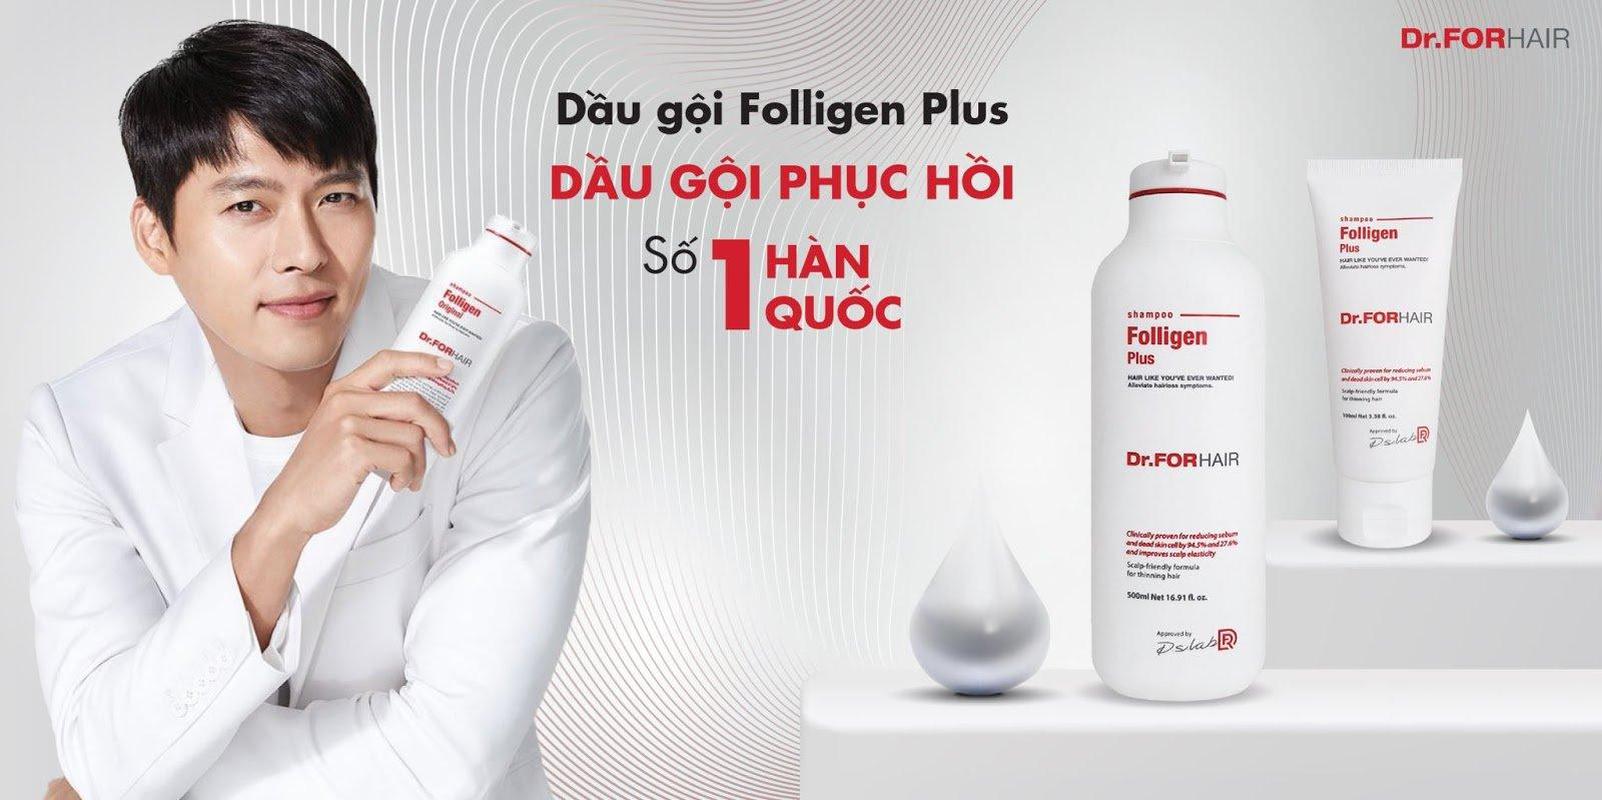 Dầu Gội Ngăn Ngừa Rụng Tóc Dr.FORHAIR/Dr For Hair Folligen Plus Shampoo hiện đã có mặt tại Hasaki với 2 dung tích cho bạn lựa chọn: 100ml và 500ml.